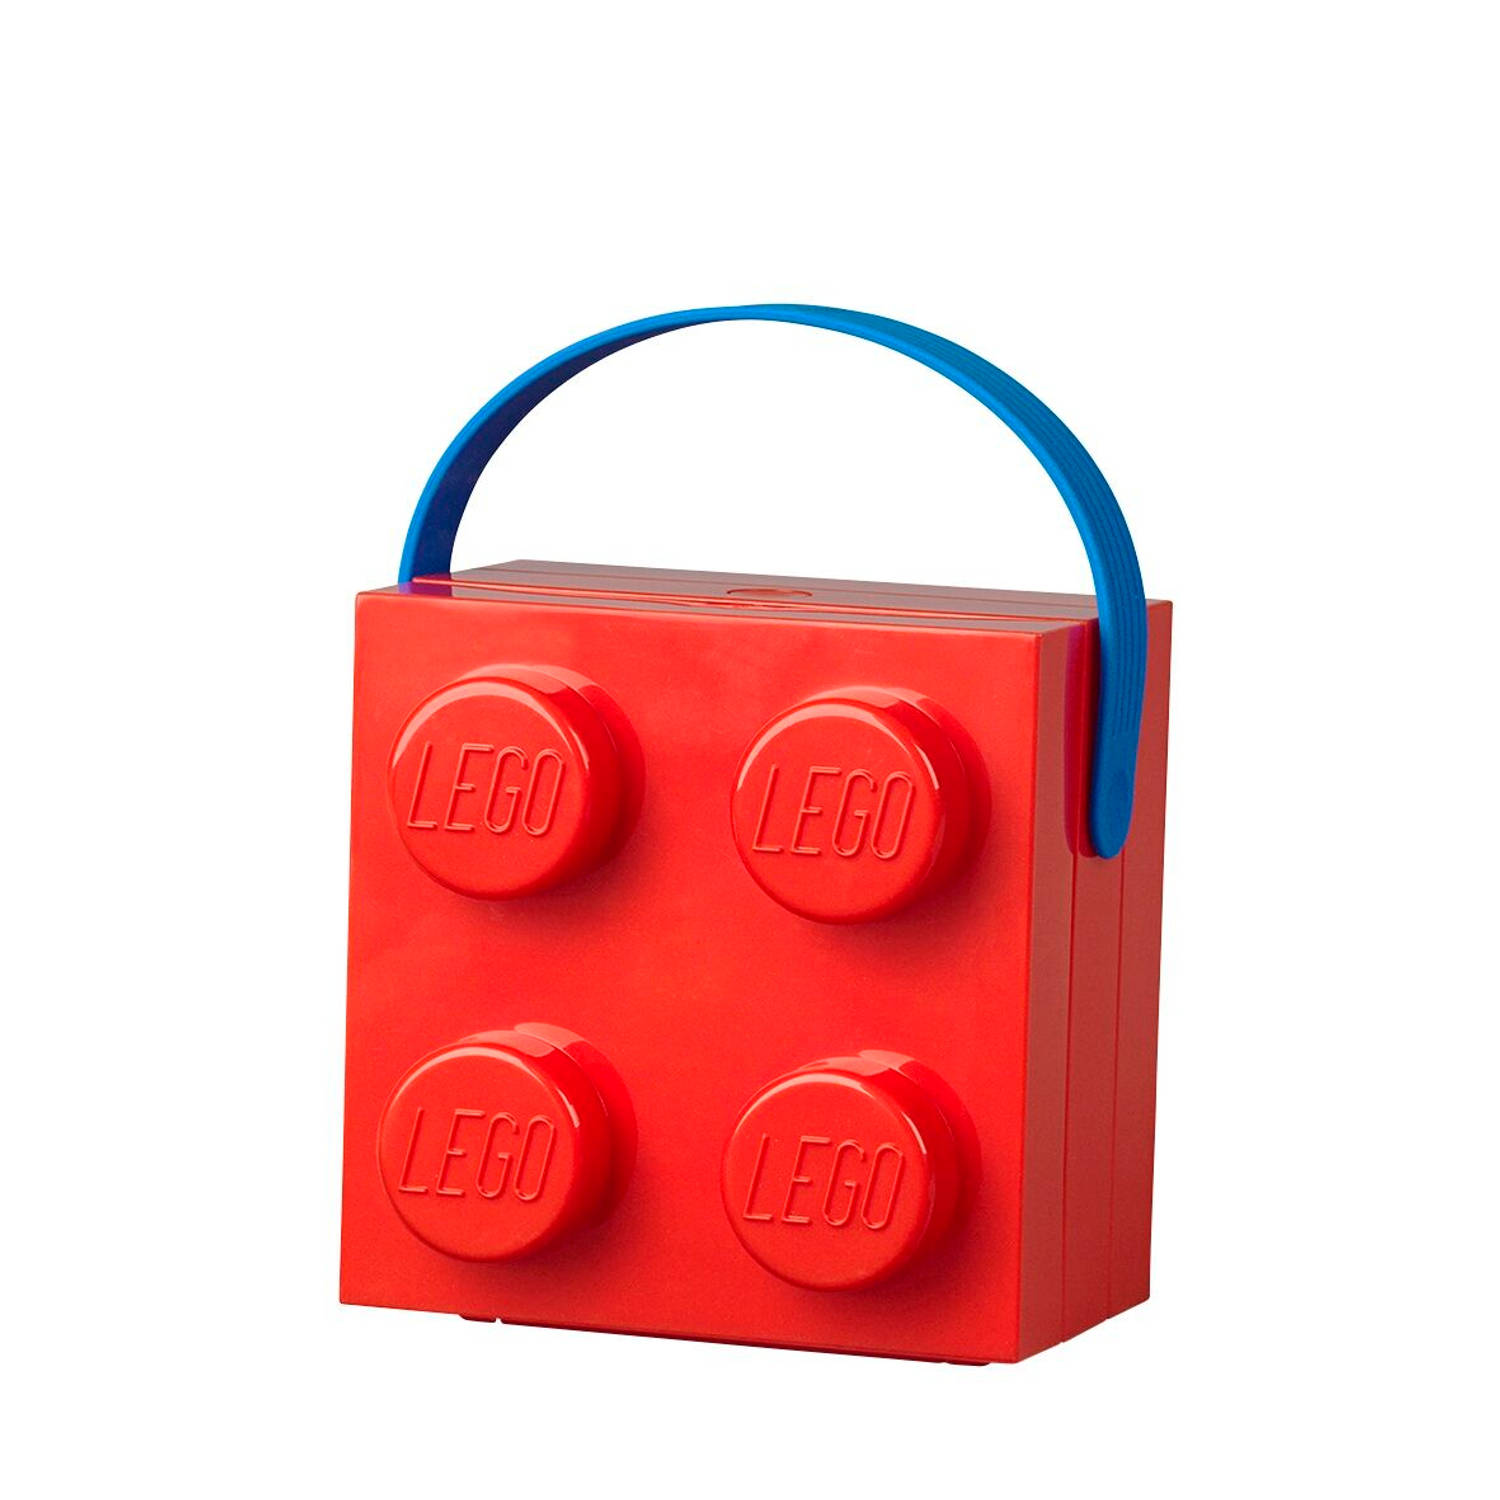 LEGO - Set van 2 - Lunchbox Brick 4 met handvat, Rood - LEGO